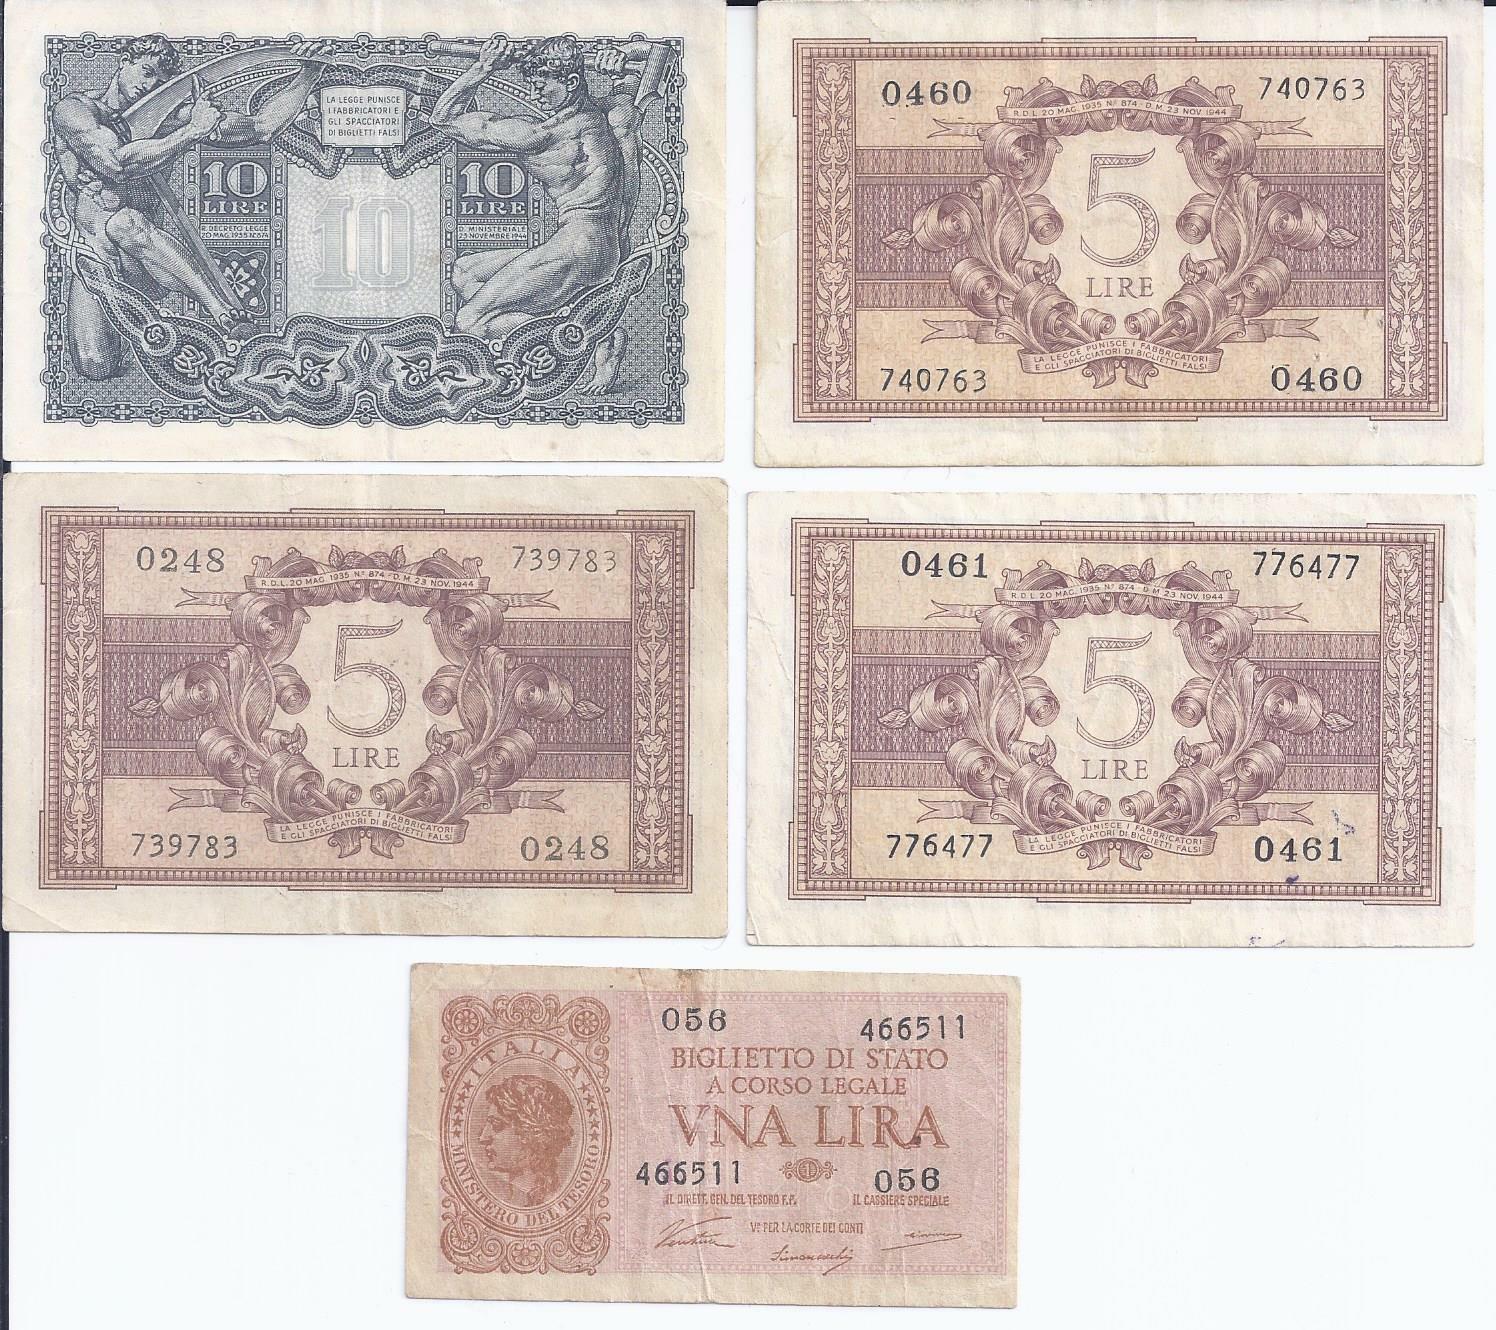 Biglietto Di Stato Banknotes 1 5 & 10 Lira Lire 1944 Very Good Circulated Italy Без бренда